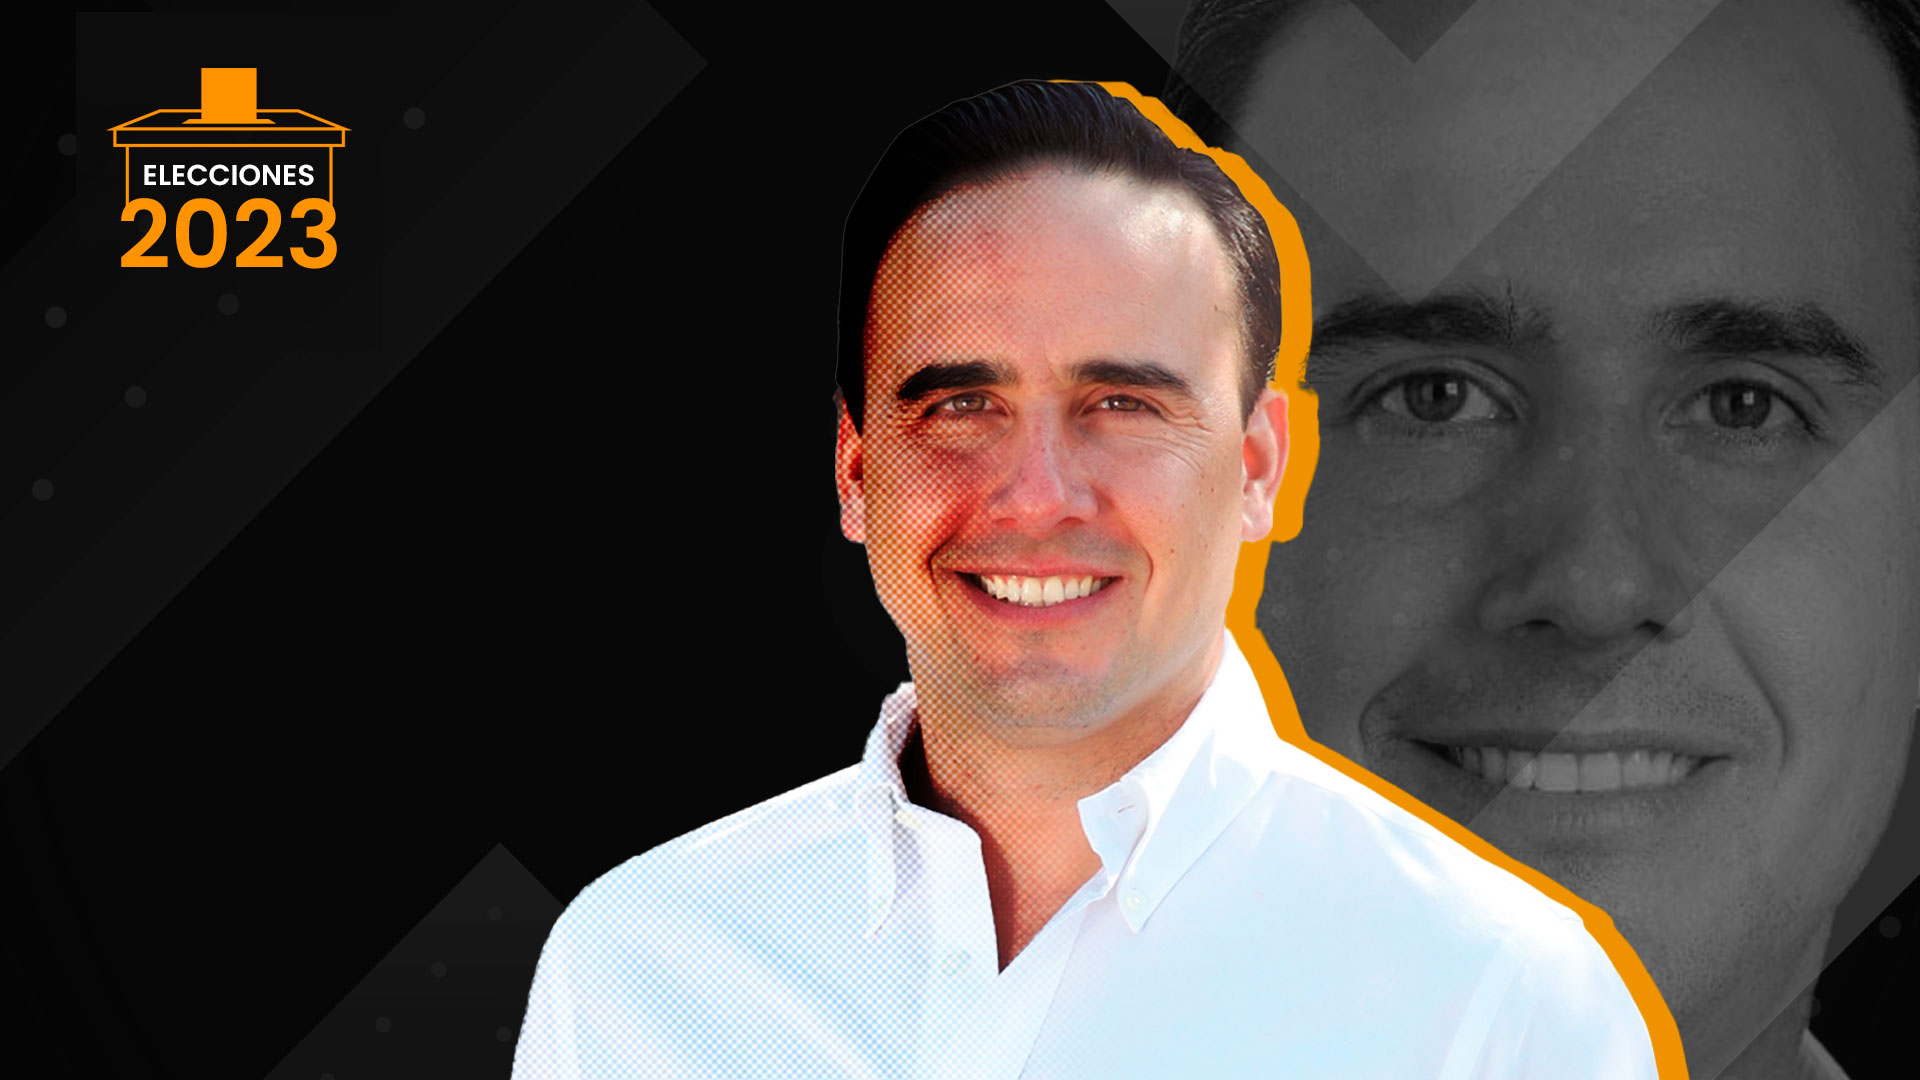 Elecciones Coahuila 2023: Manolo Jiménez reveló el “secreto” del PRI para vencer a Morena 